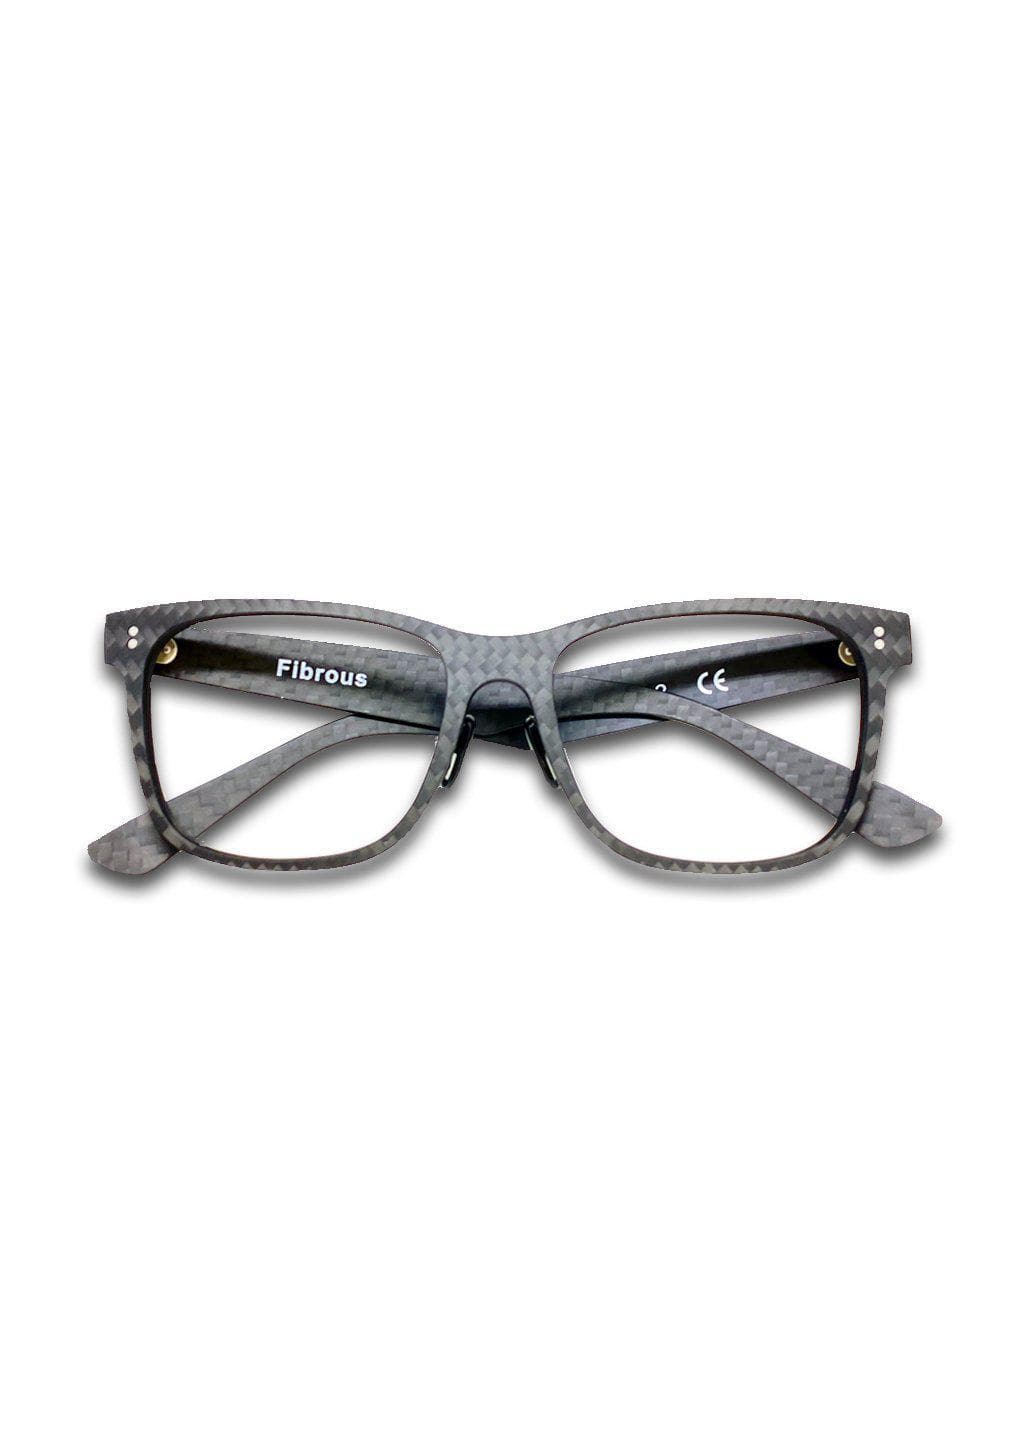 Carbon Fiber - Fibrous for Prescription - Glasses for lenses.